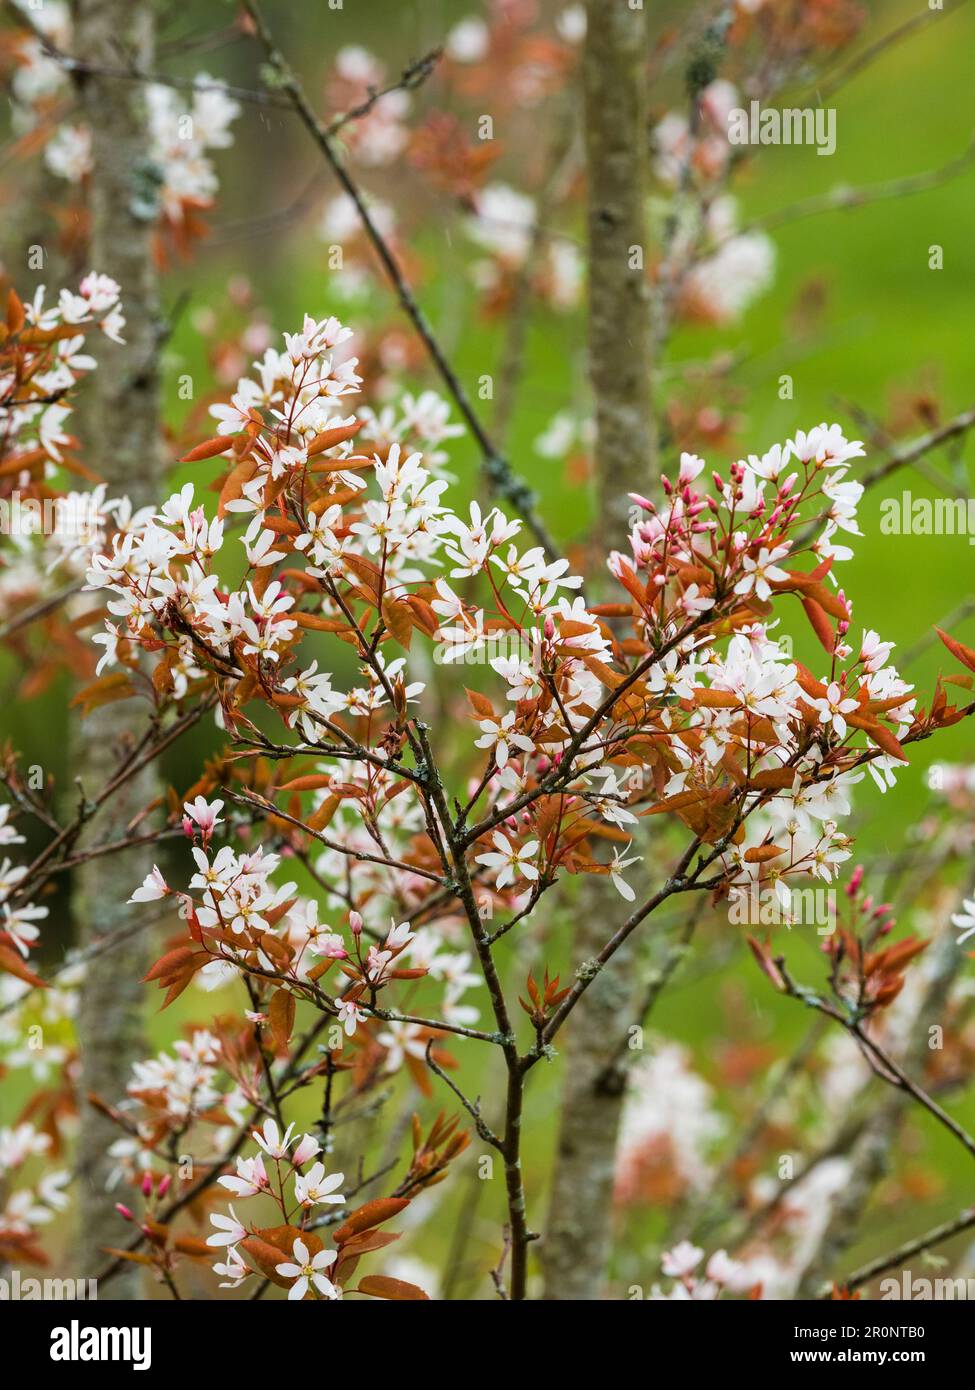 Follaje primaveral de bronce y flores blancas del árbol de Serviceberry resistente, Amelanchier x grandiflora 'Robin Hill' Foto de stock